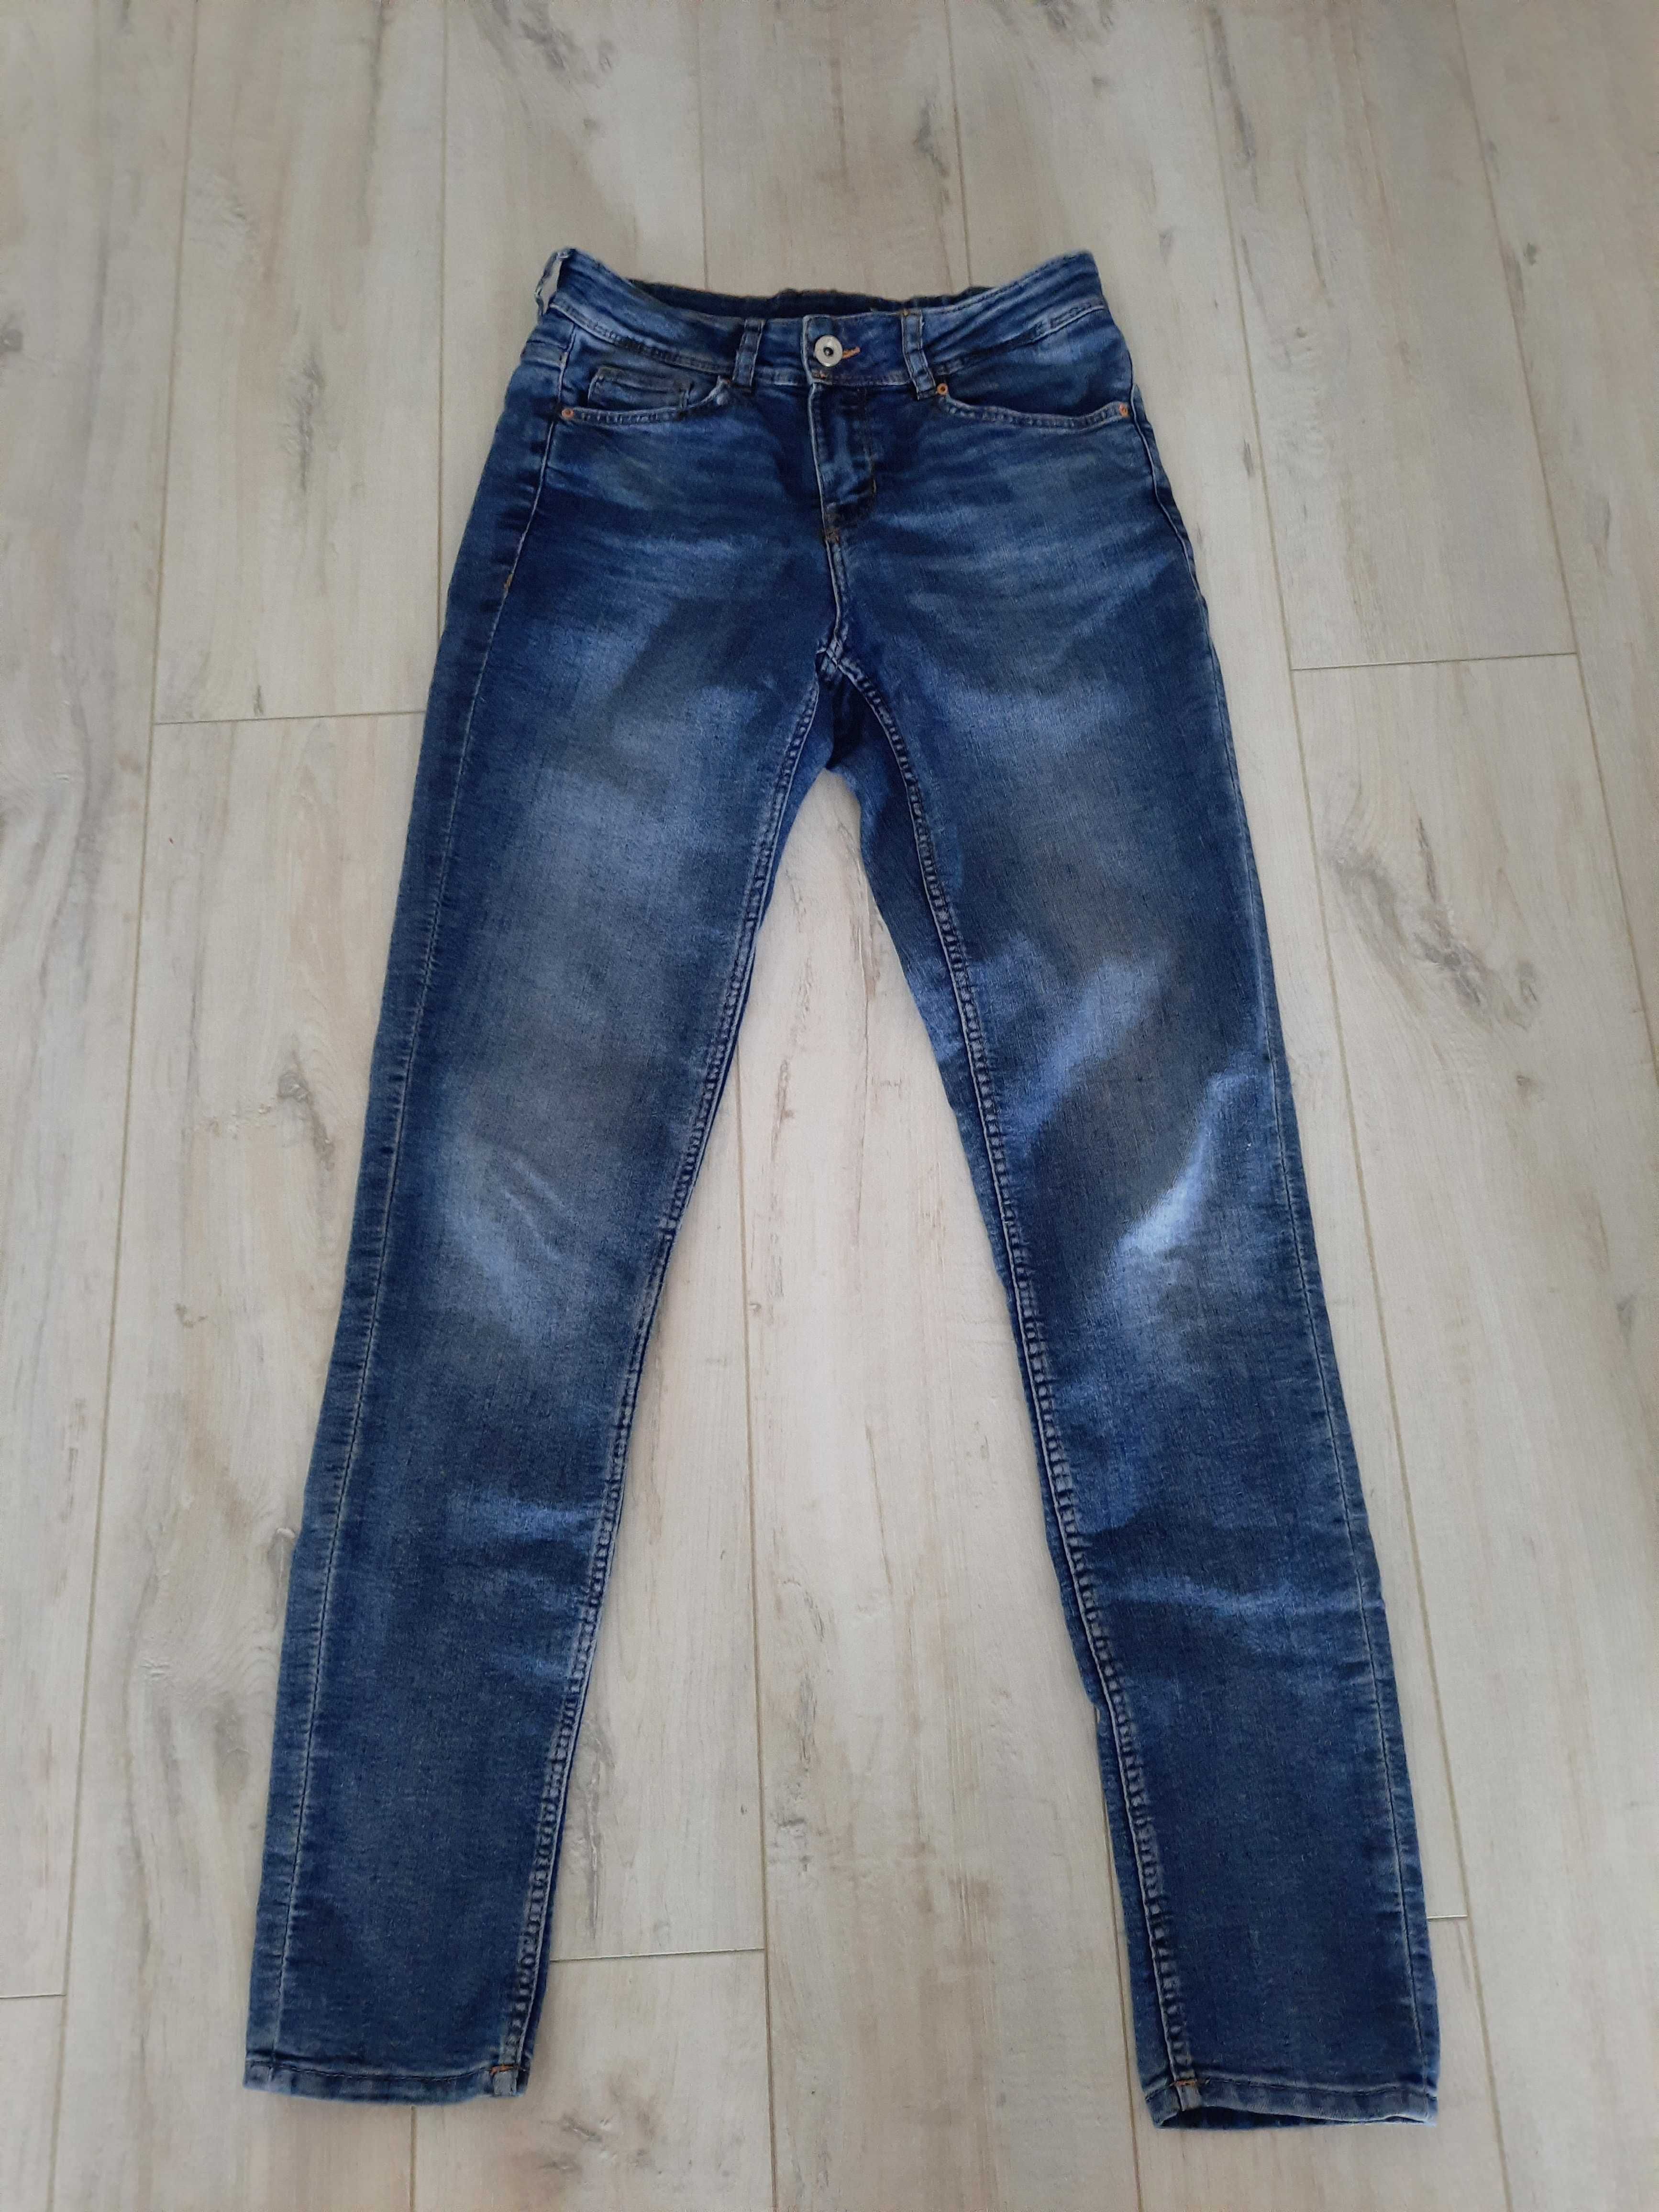 Spodnie Dżinsy, jeansy H&M r.34